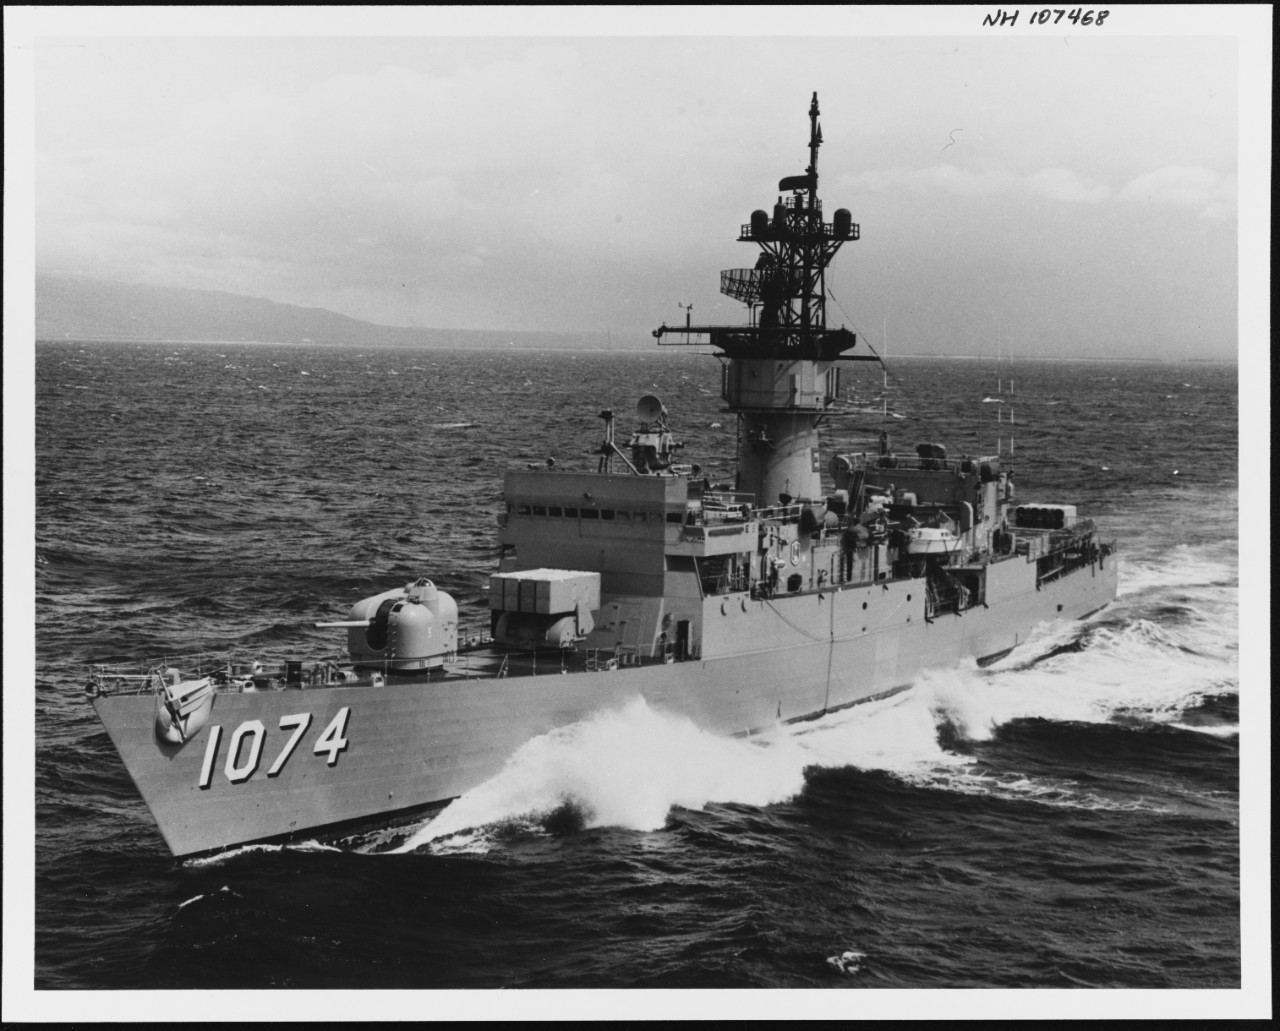 Photo #: NH 107468  USS Harold E. Holt